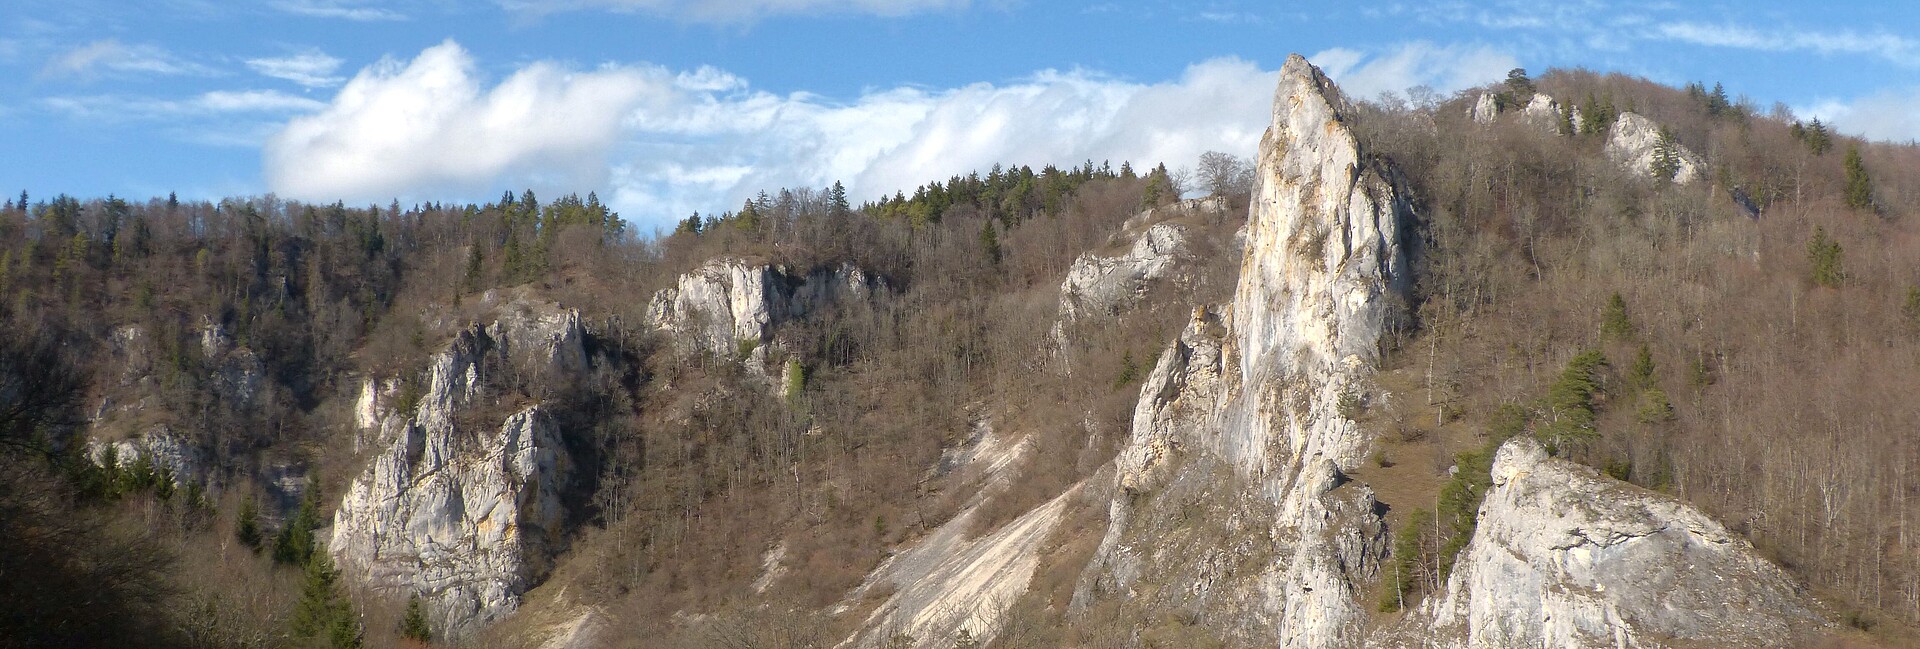 Blick auf Felsen, Wälder und Wiesen im Naturschutzgebiet Stieglesfels